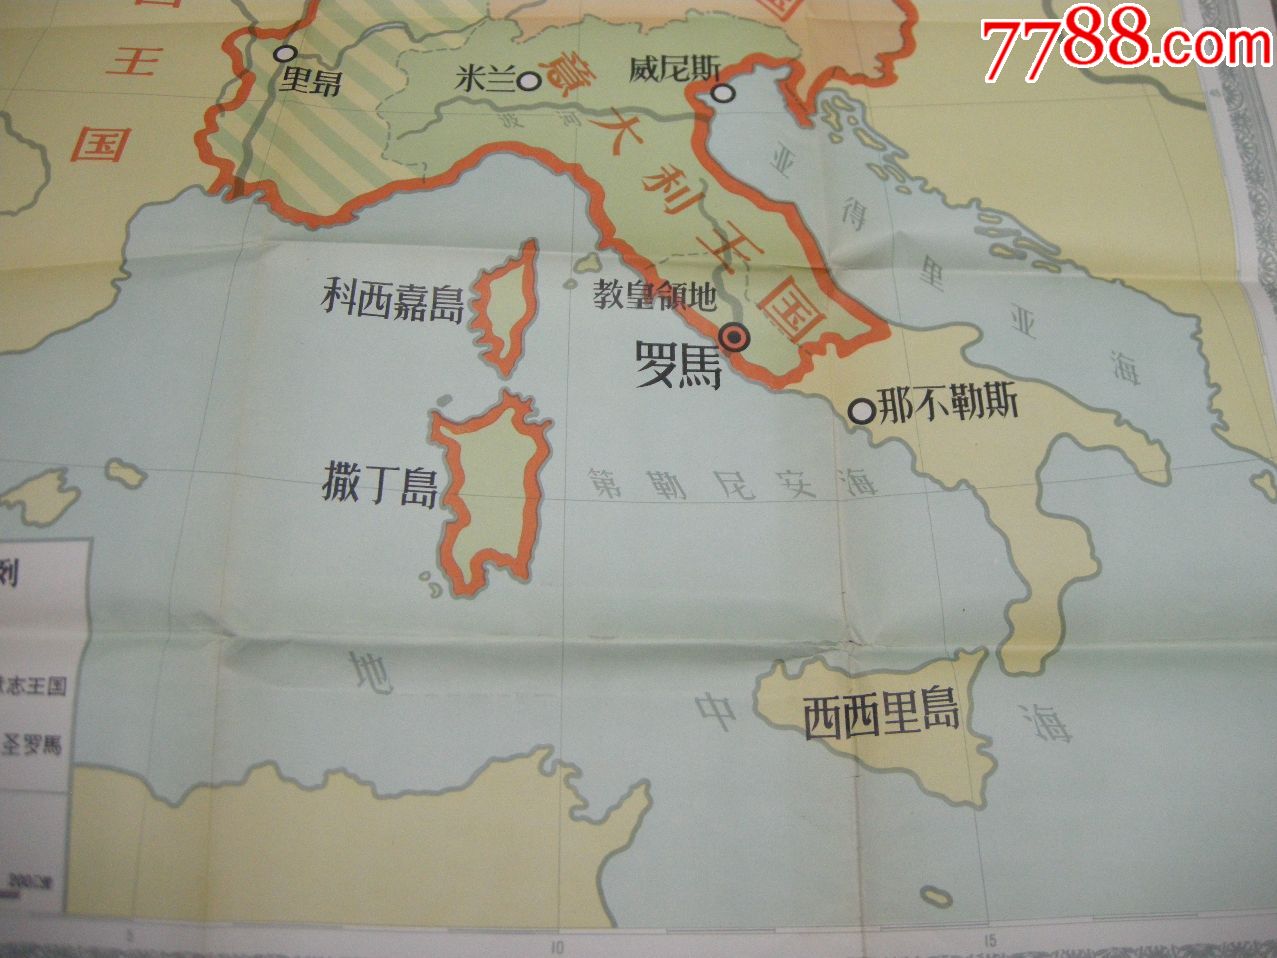 50年代地图,挂图;1957年一版一印《十到十一世纪神圣罗马帝国图》